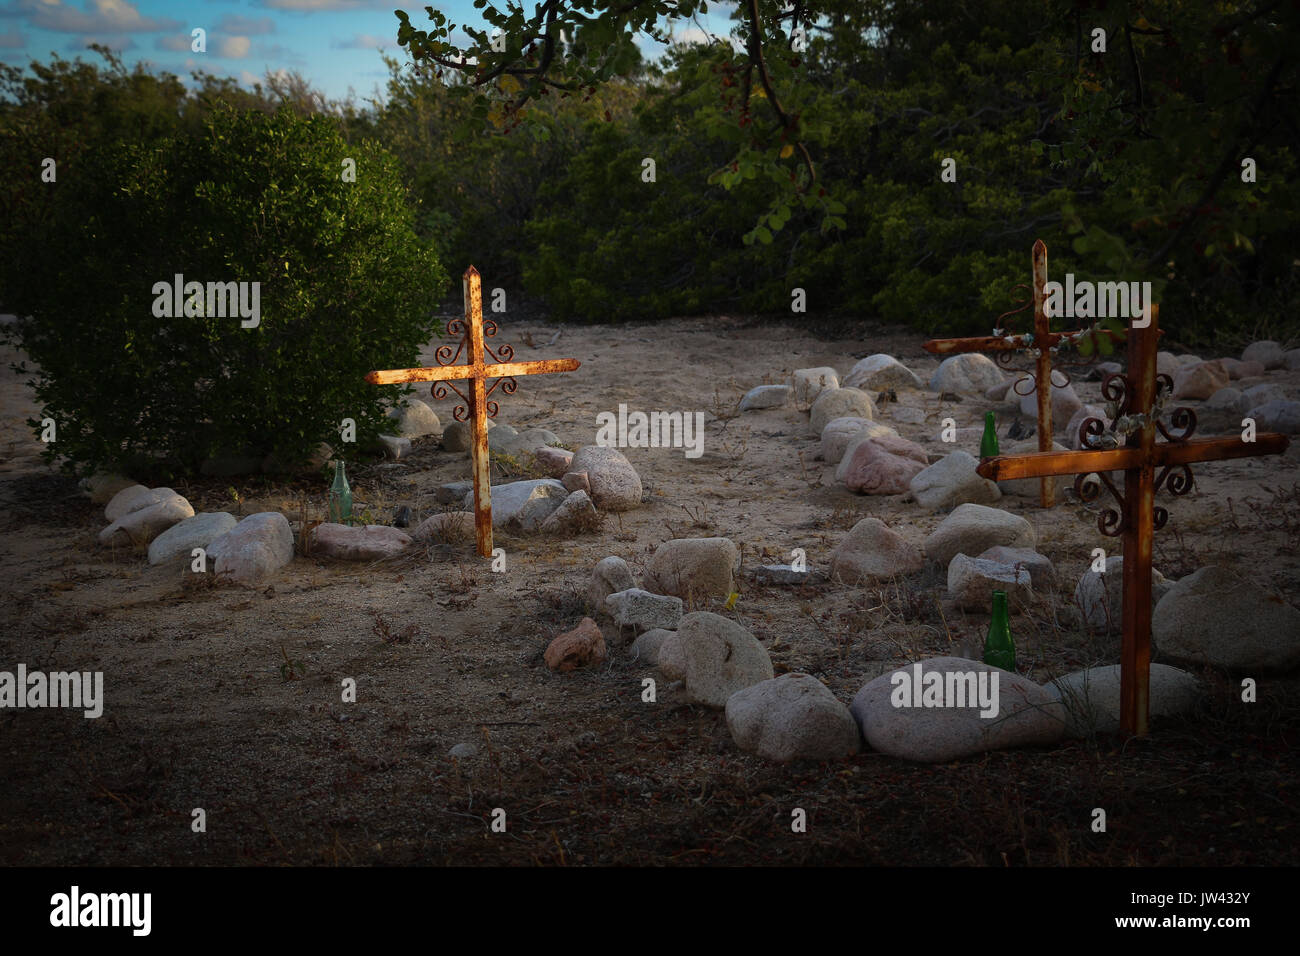 Trois tombes, décrites avec des pierres, dans une plage de arroyo dans Baja California Sur, au Mexique, avec le soleil du soir frappant une croix, le reste dans l'obscurité. Banque D'Images